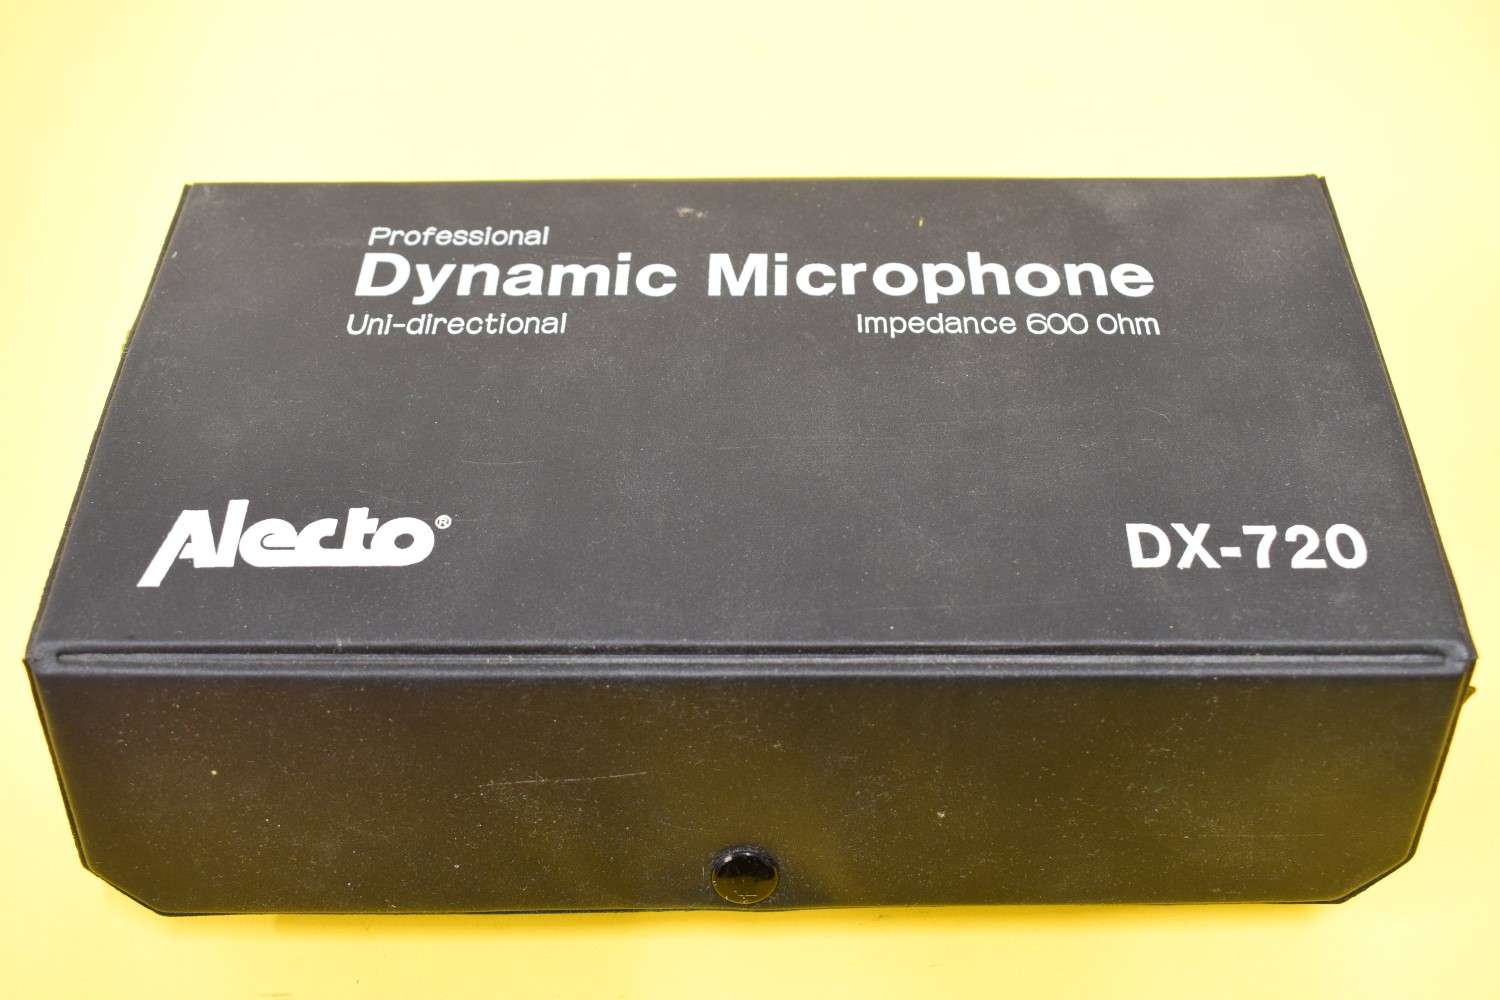 Alecto DX-720 Mikrofon – In Originale Verpackung